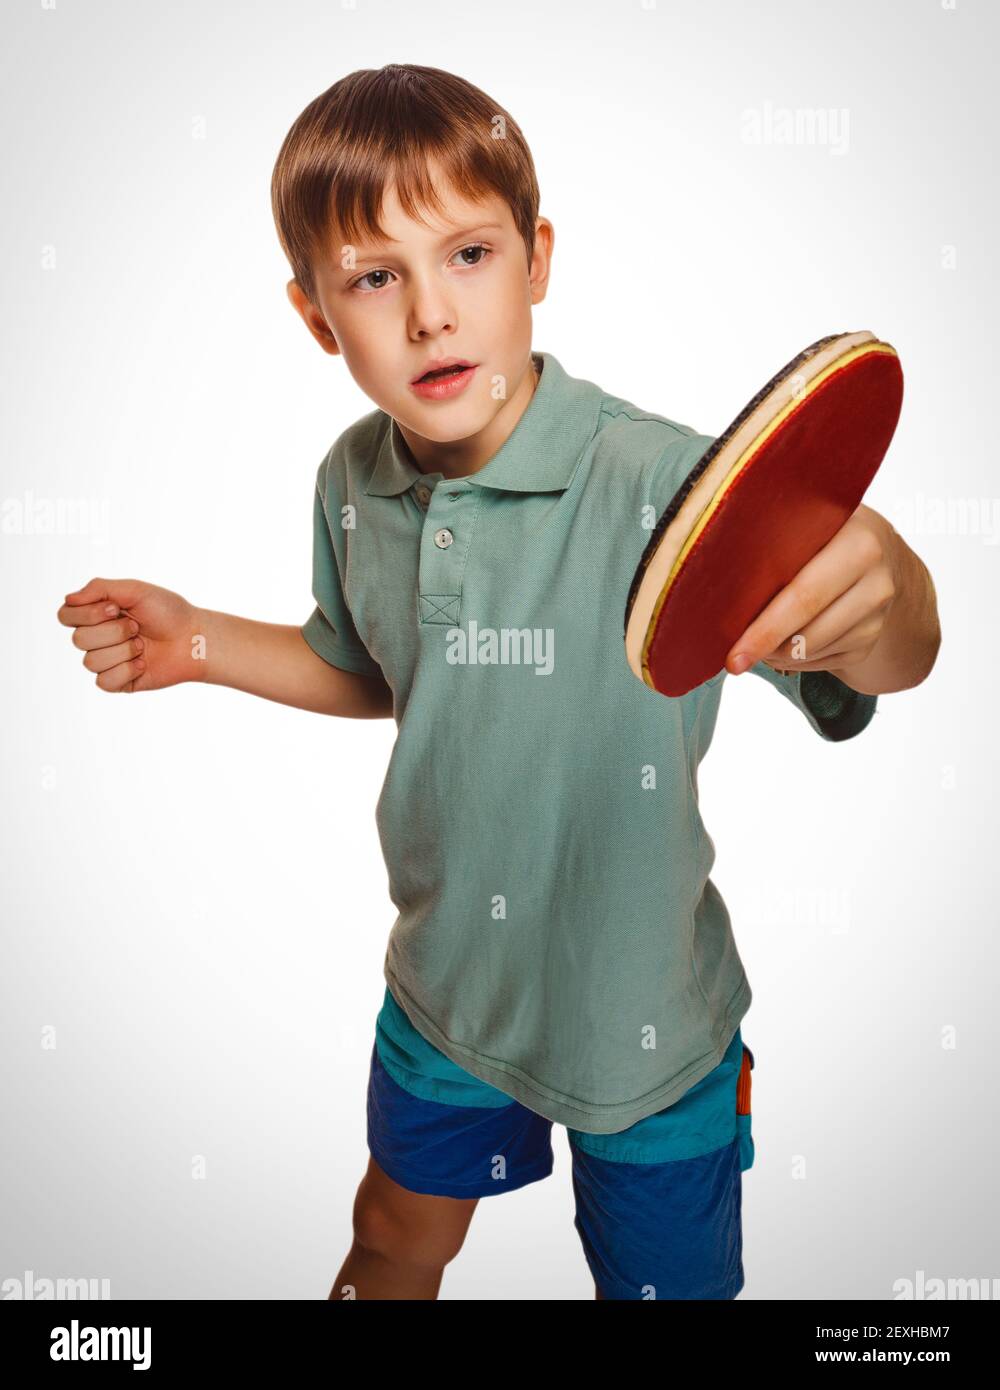 Blonde Ping Pong Mann junge spielen Tischtennis Rückhand nimmt Oberteile  Stockfotografie - Alamy